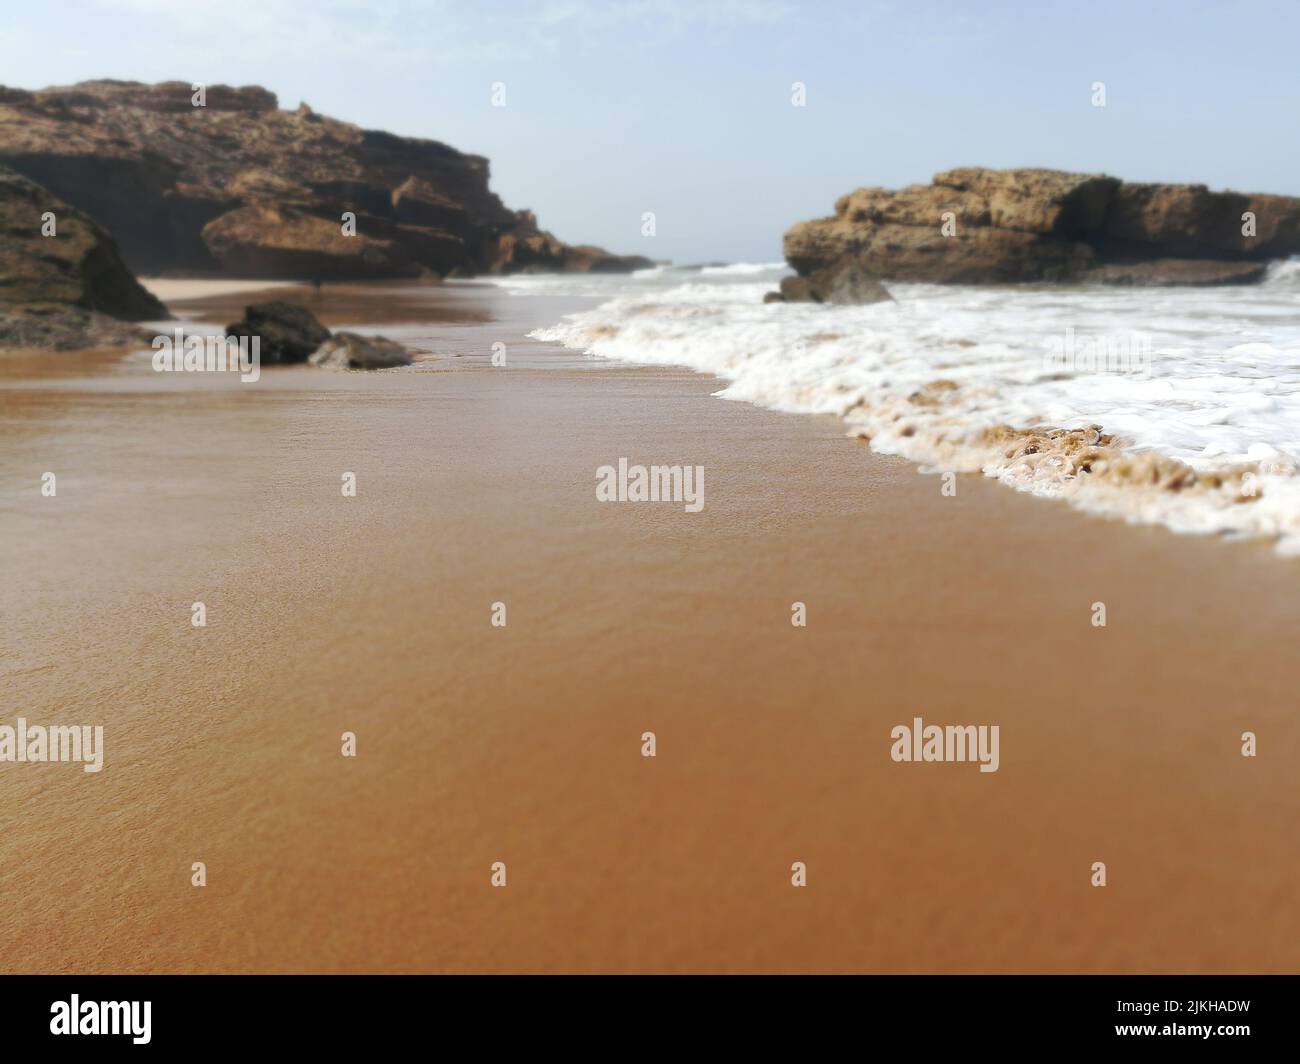 Un primer plano de las olas del mar en la playa de arena con piedras en Marruecos Foto de stock